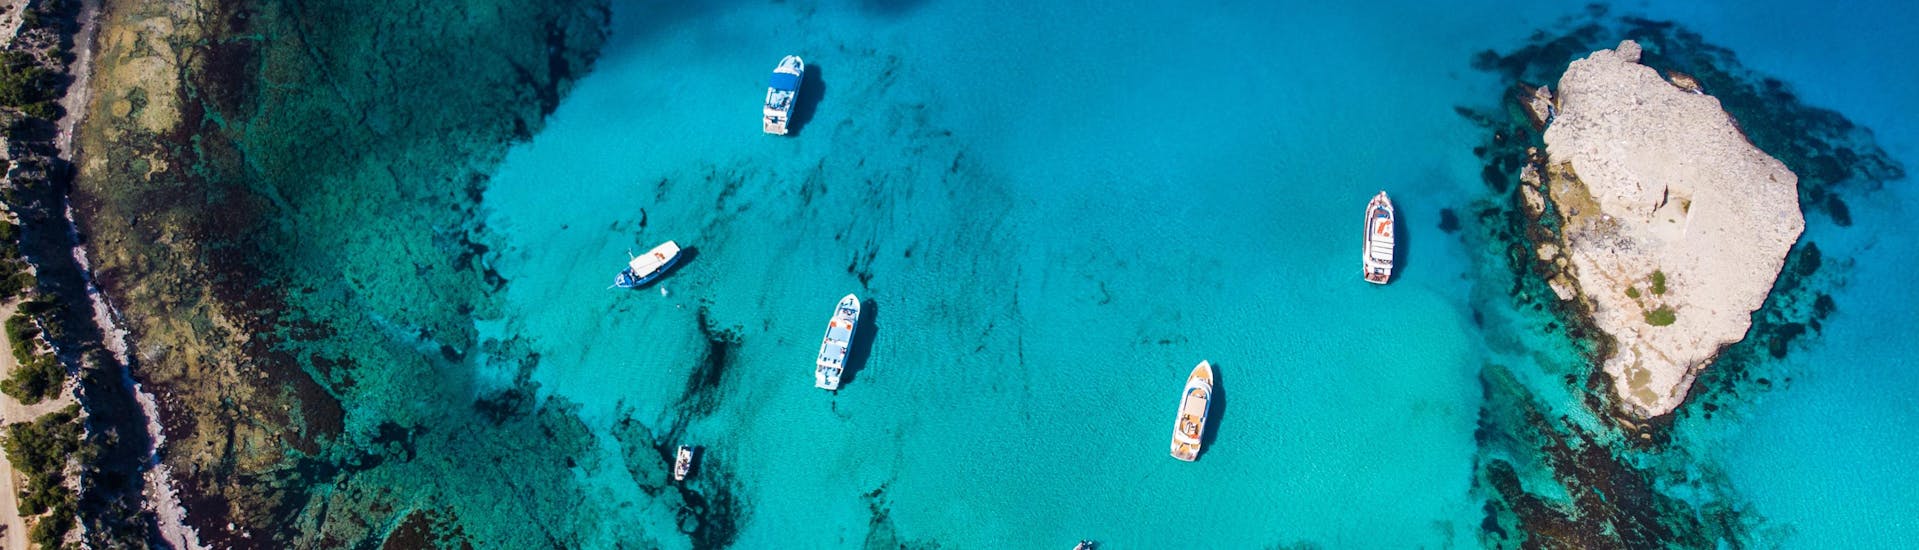 Luchtfoto van de blauwe lagune, een populaire bestemming van boottochten vanuit Latchi.